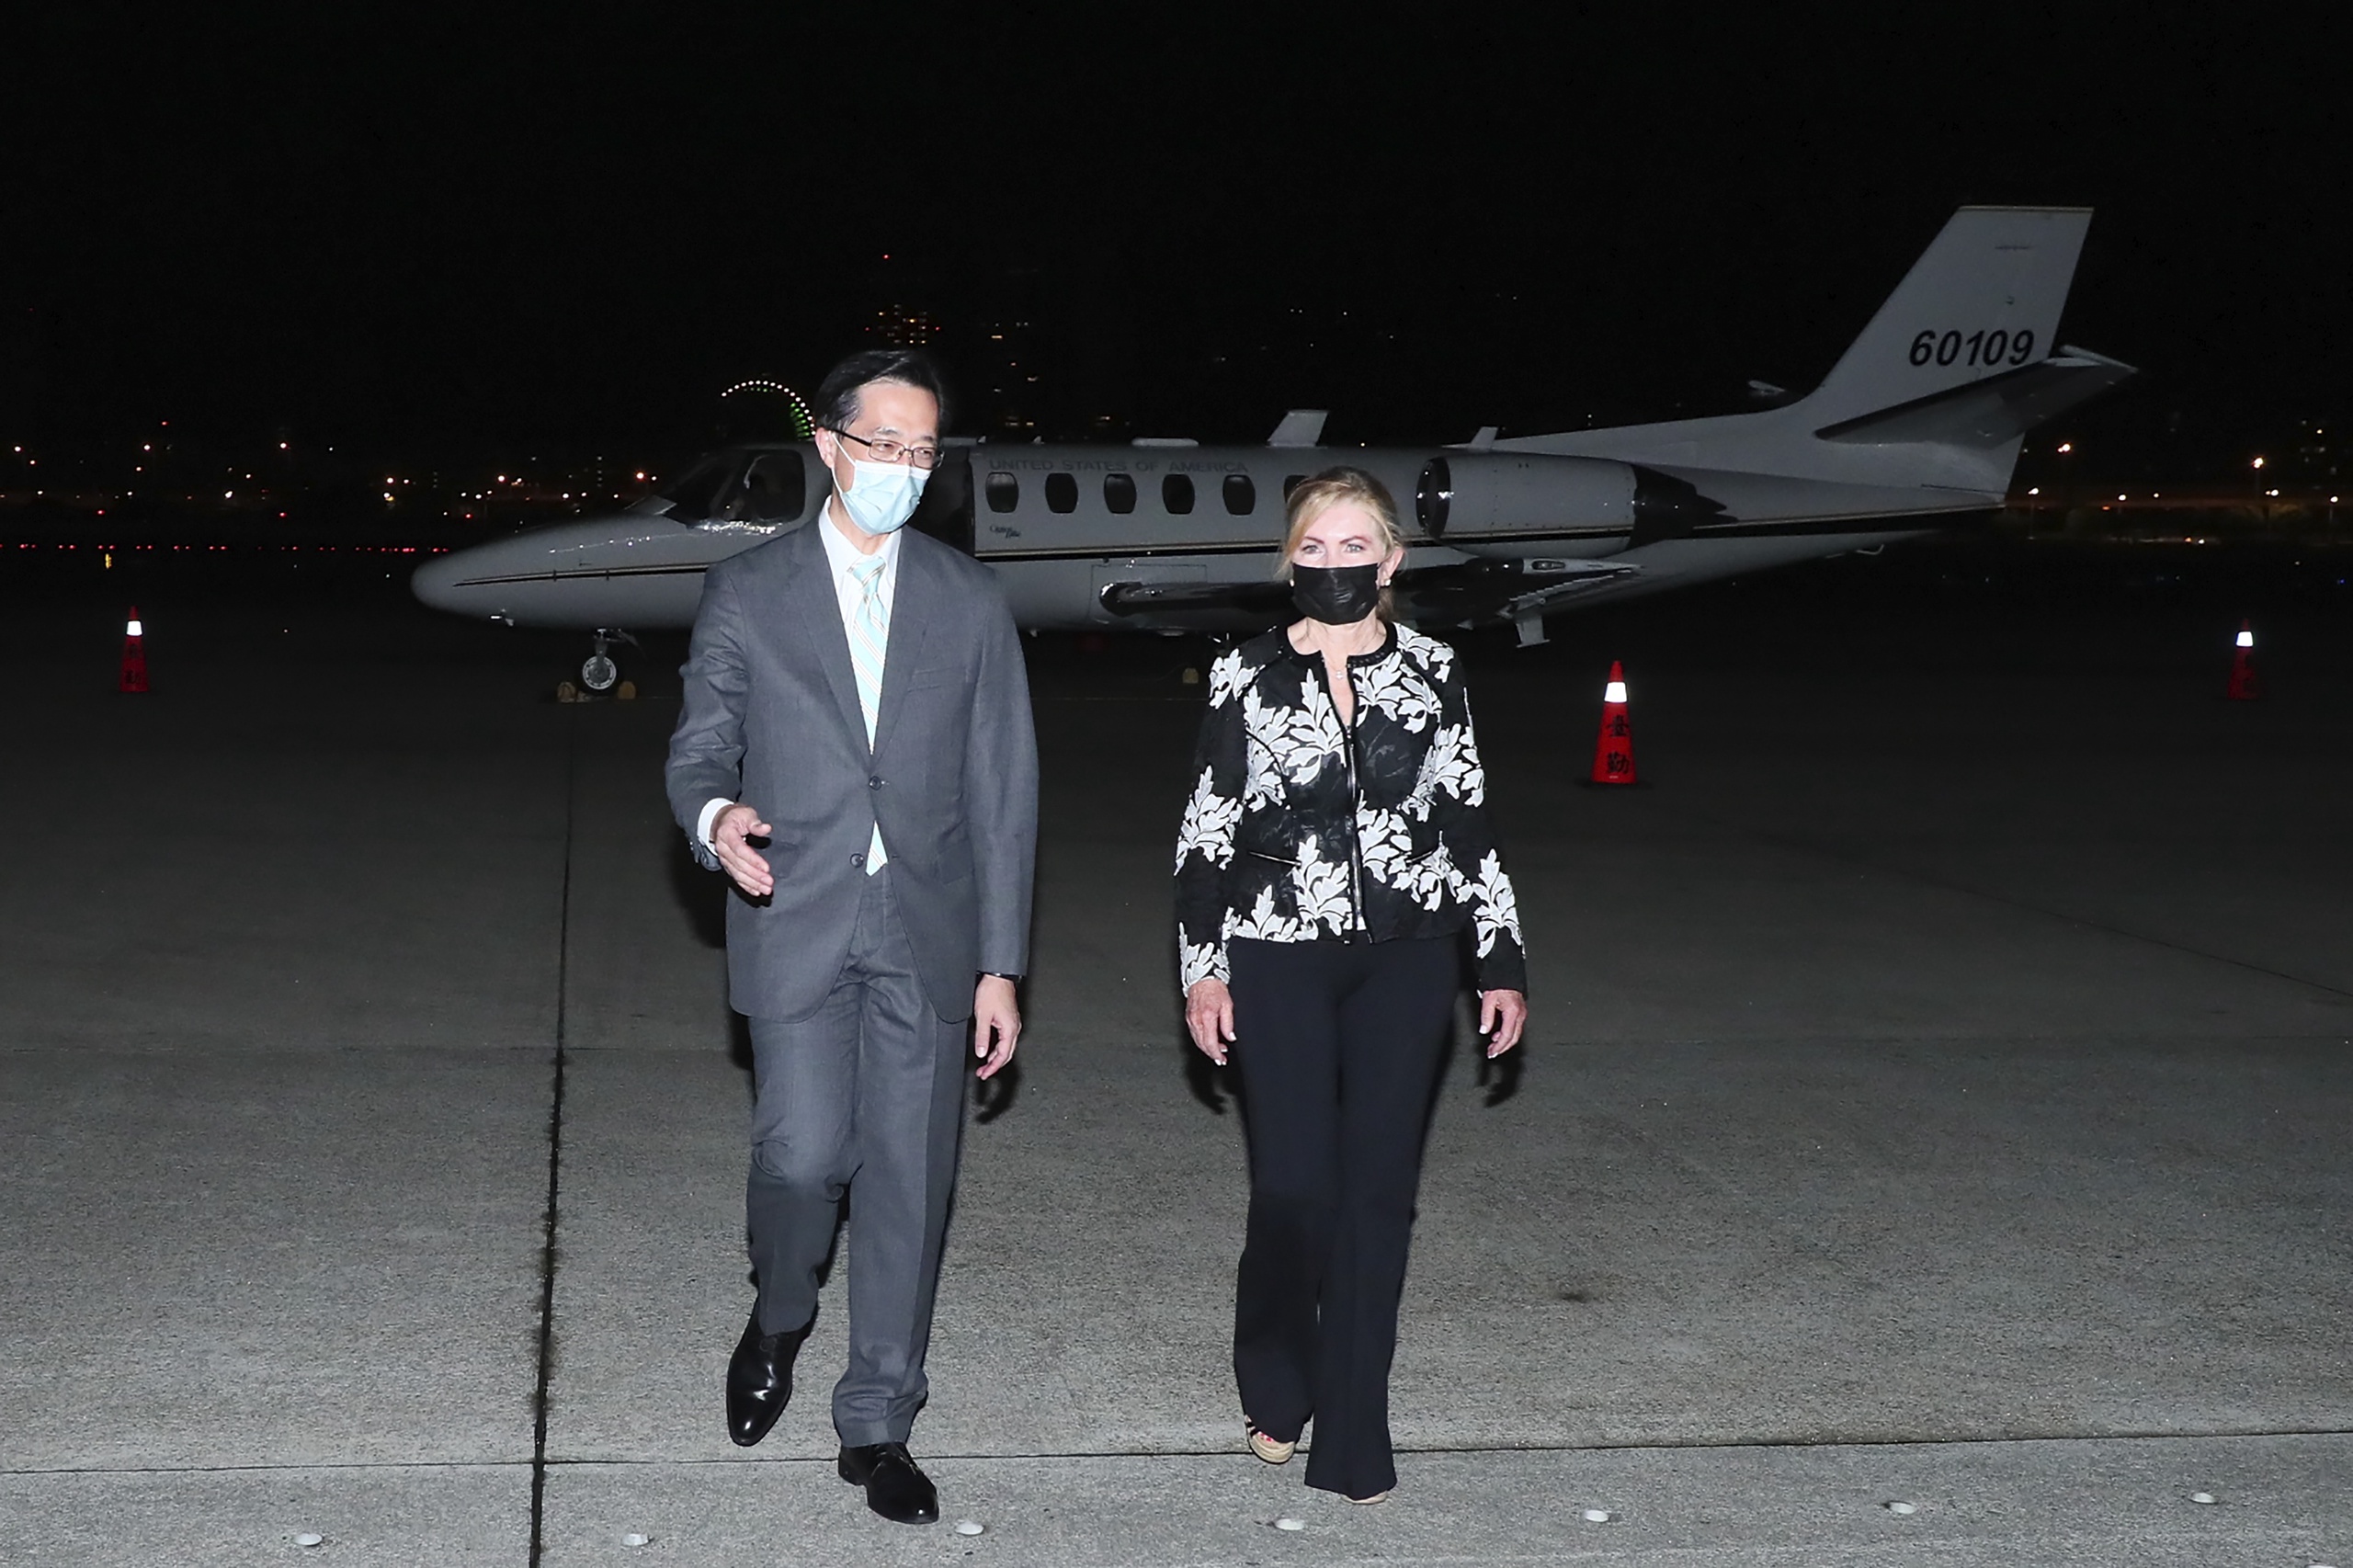 De Amerikaanse senator Marsha Blackburn is donderdag aangekomen in Taiwan. Het is het derde bezoek van een politicus uit de Verenigde Staten deze maand.